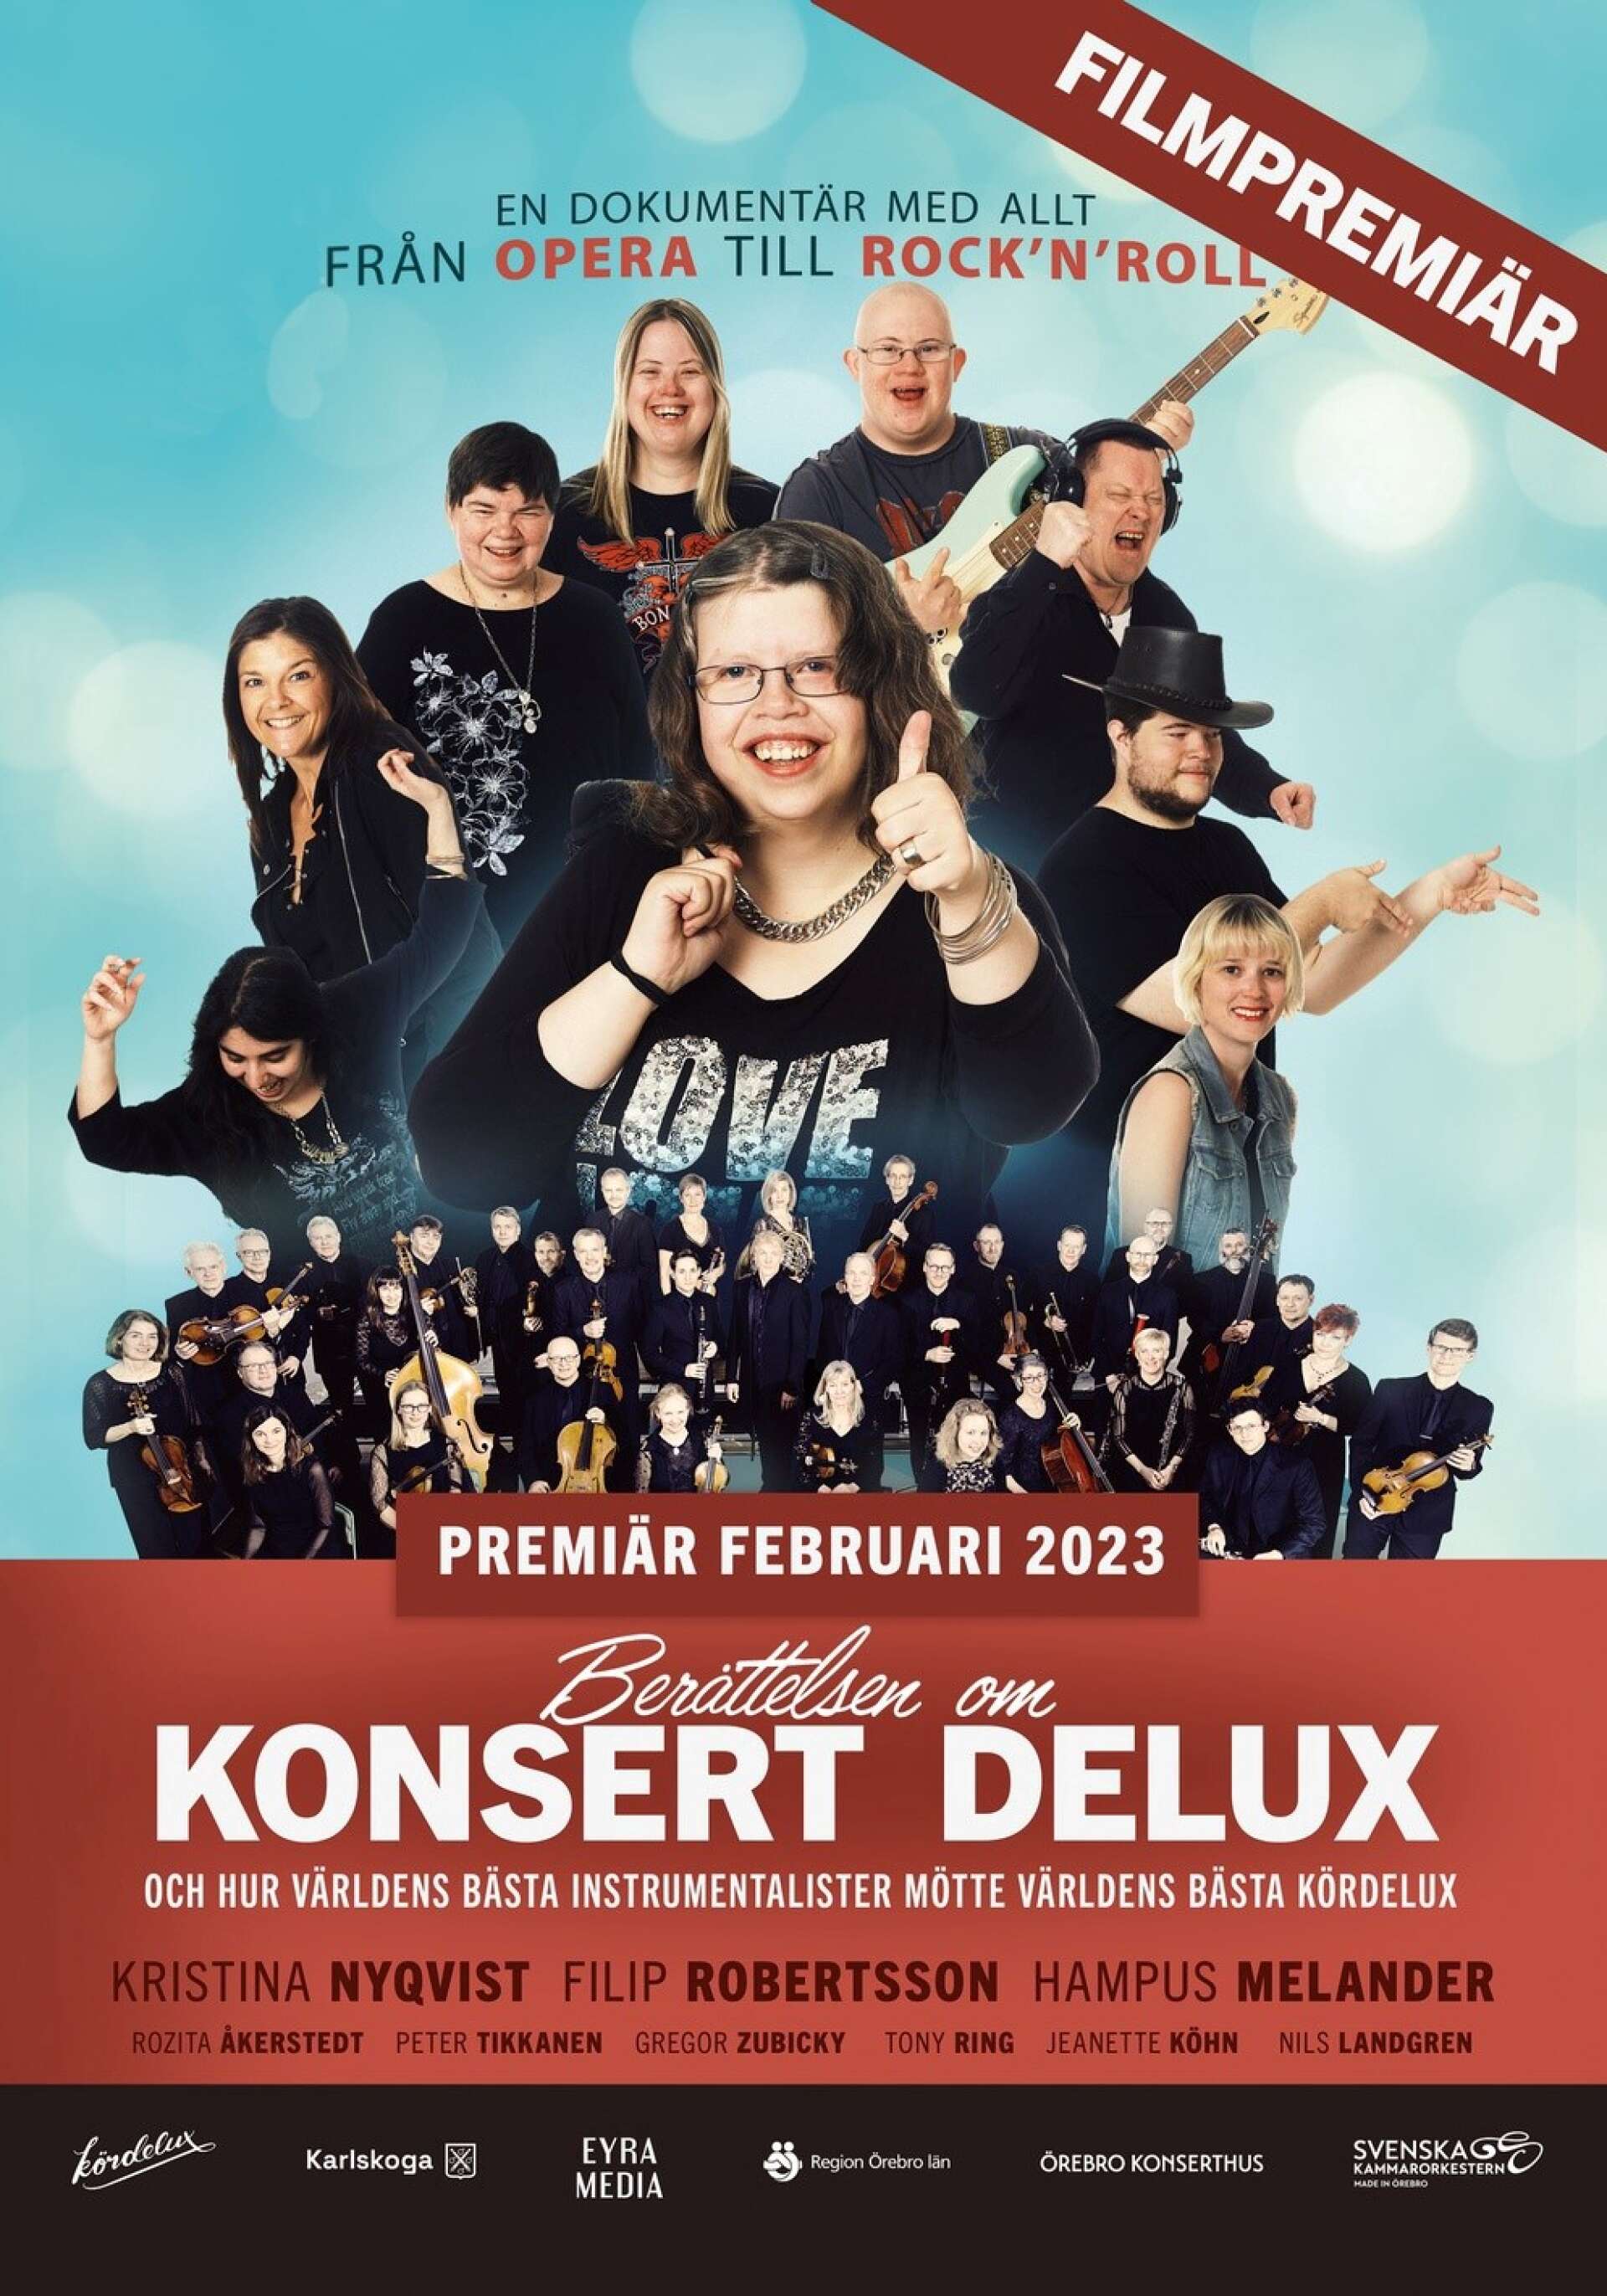 Berättelsen om konsert Deluxe heter dokumentärfilmen som har galapremiär den 15 februari.